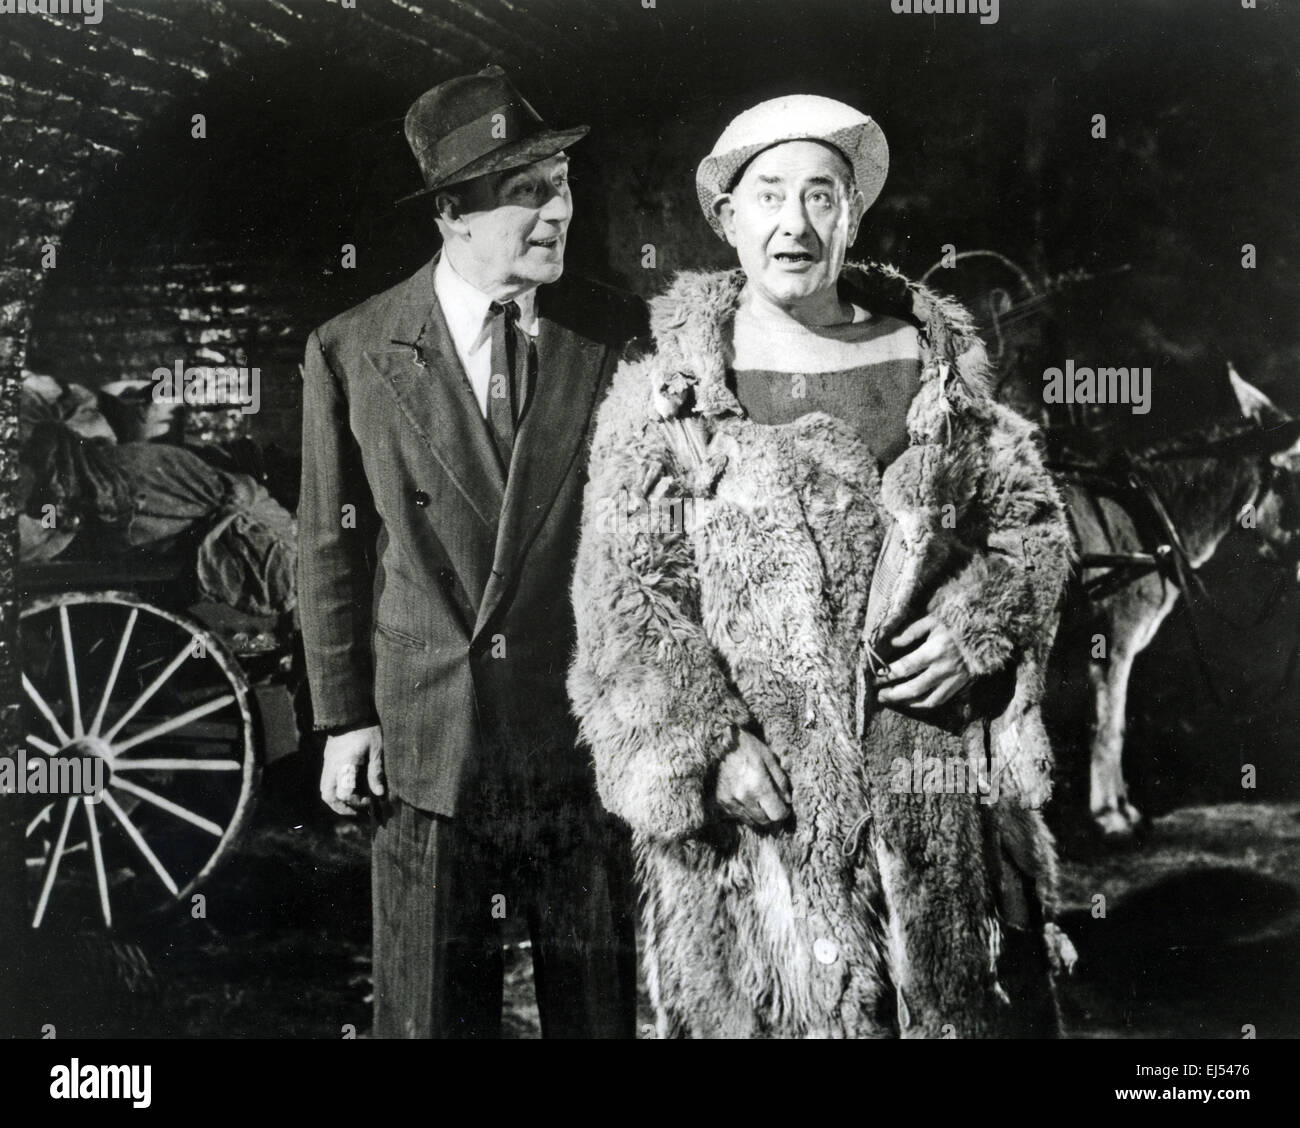 FLANAGAN und ALLEN britischen Gesang und Comedy Duo singen ihre berühmten Underneath the Arches ca. 1940 Stockfoto